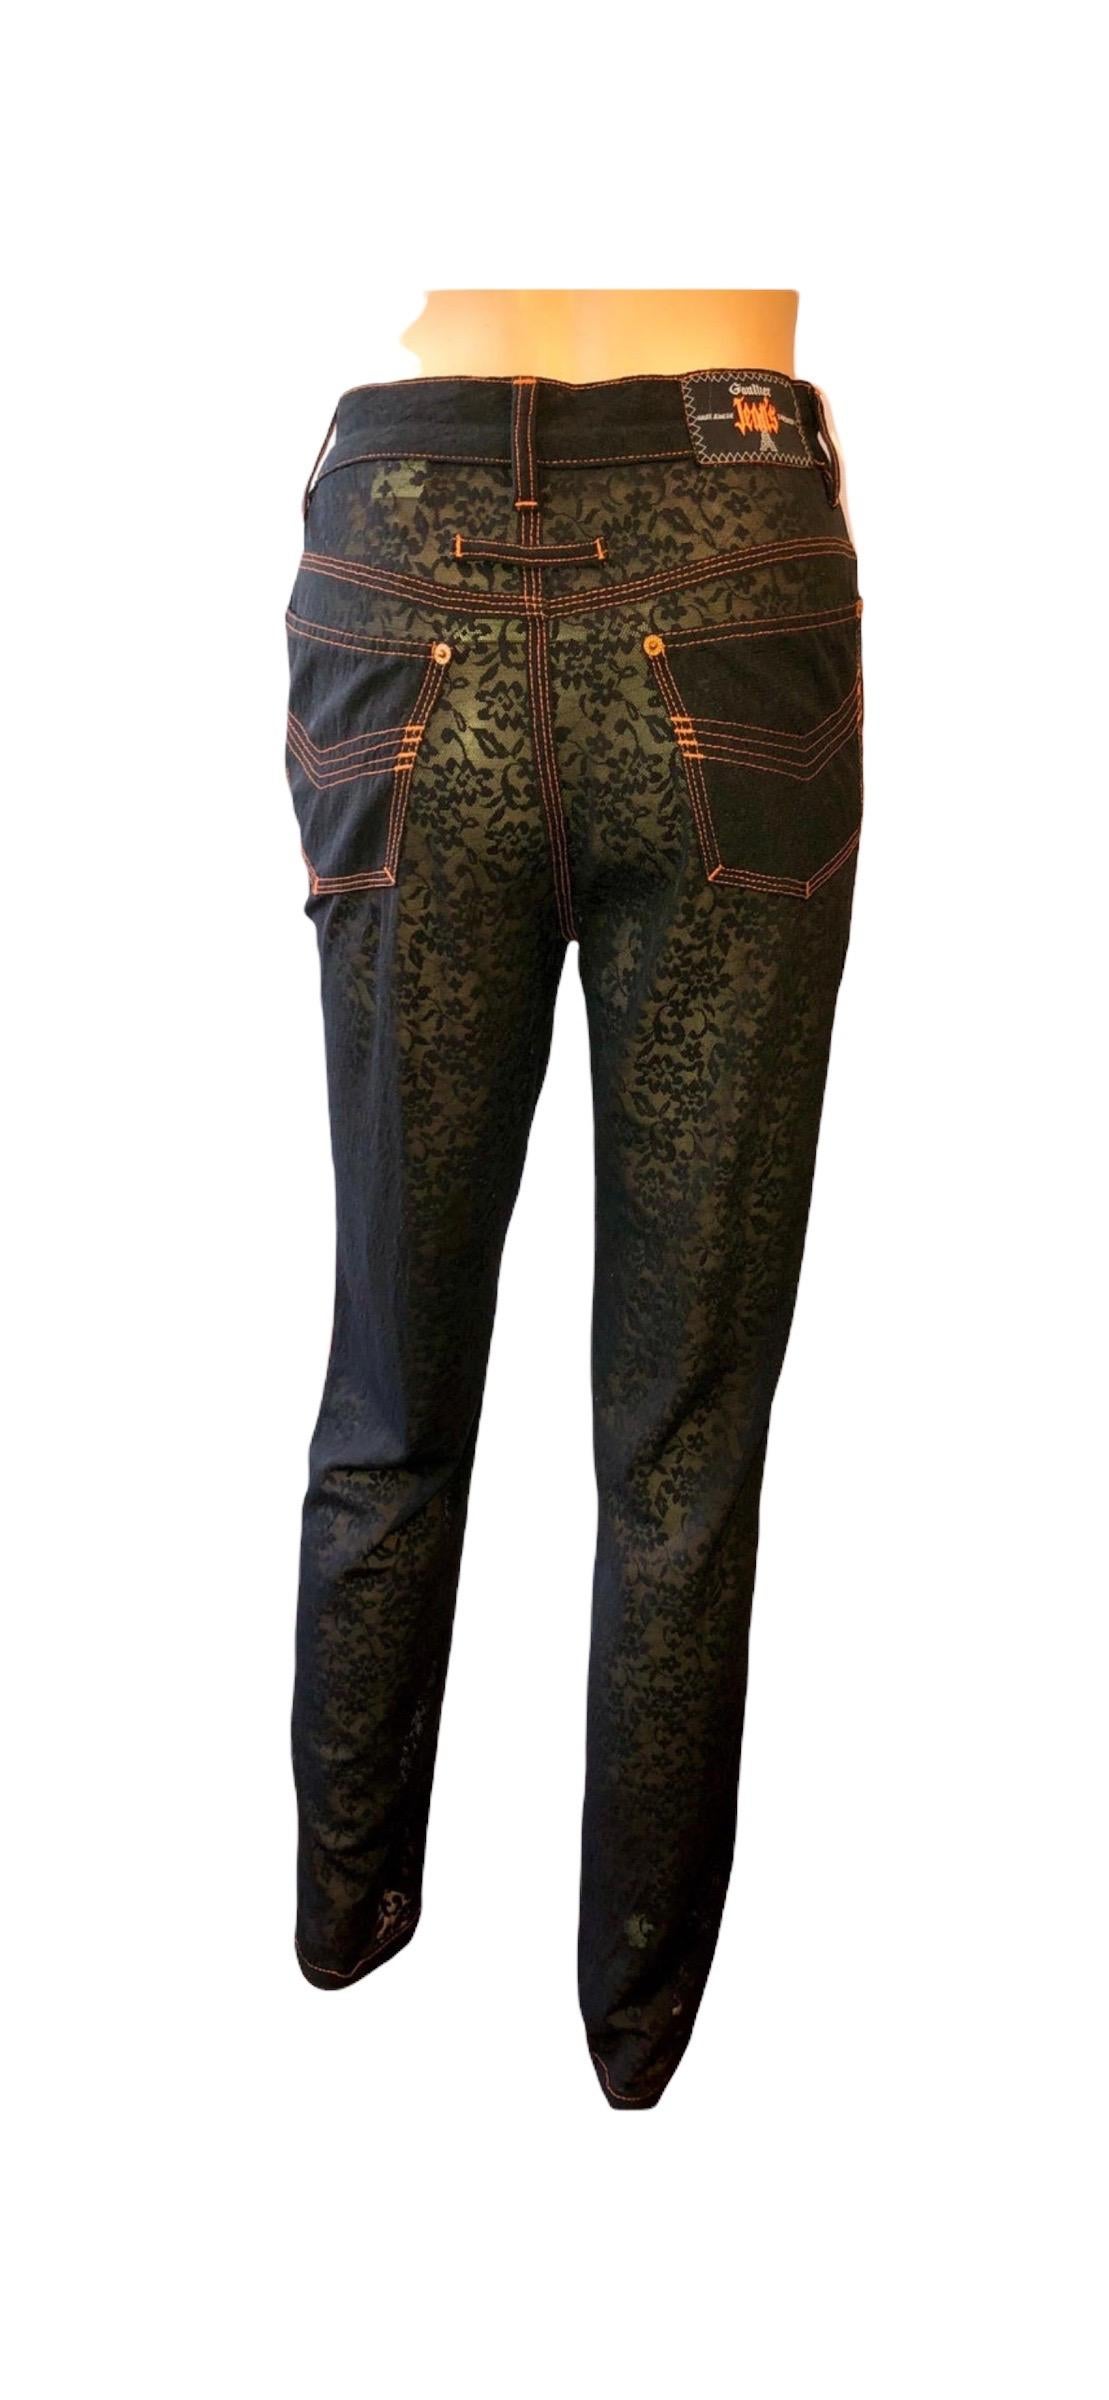 Jean Paul Gaultier Vintage Semi-Sheer Mesh Black Leggings Pants For Sale 2